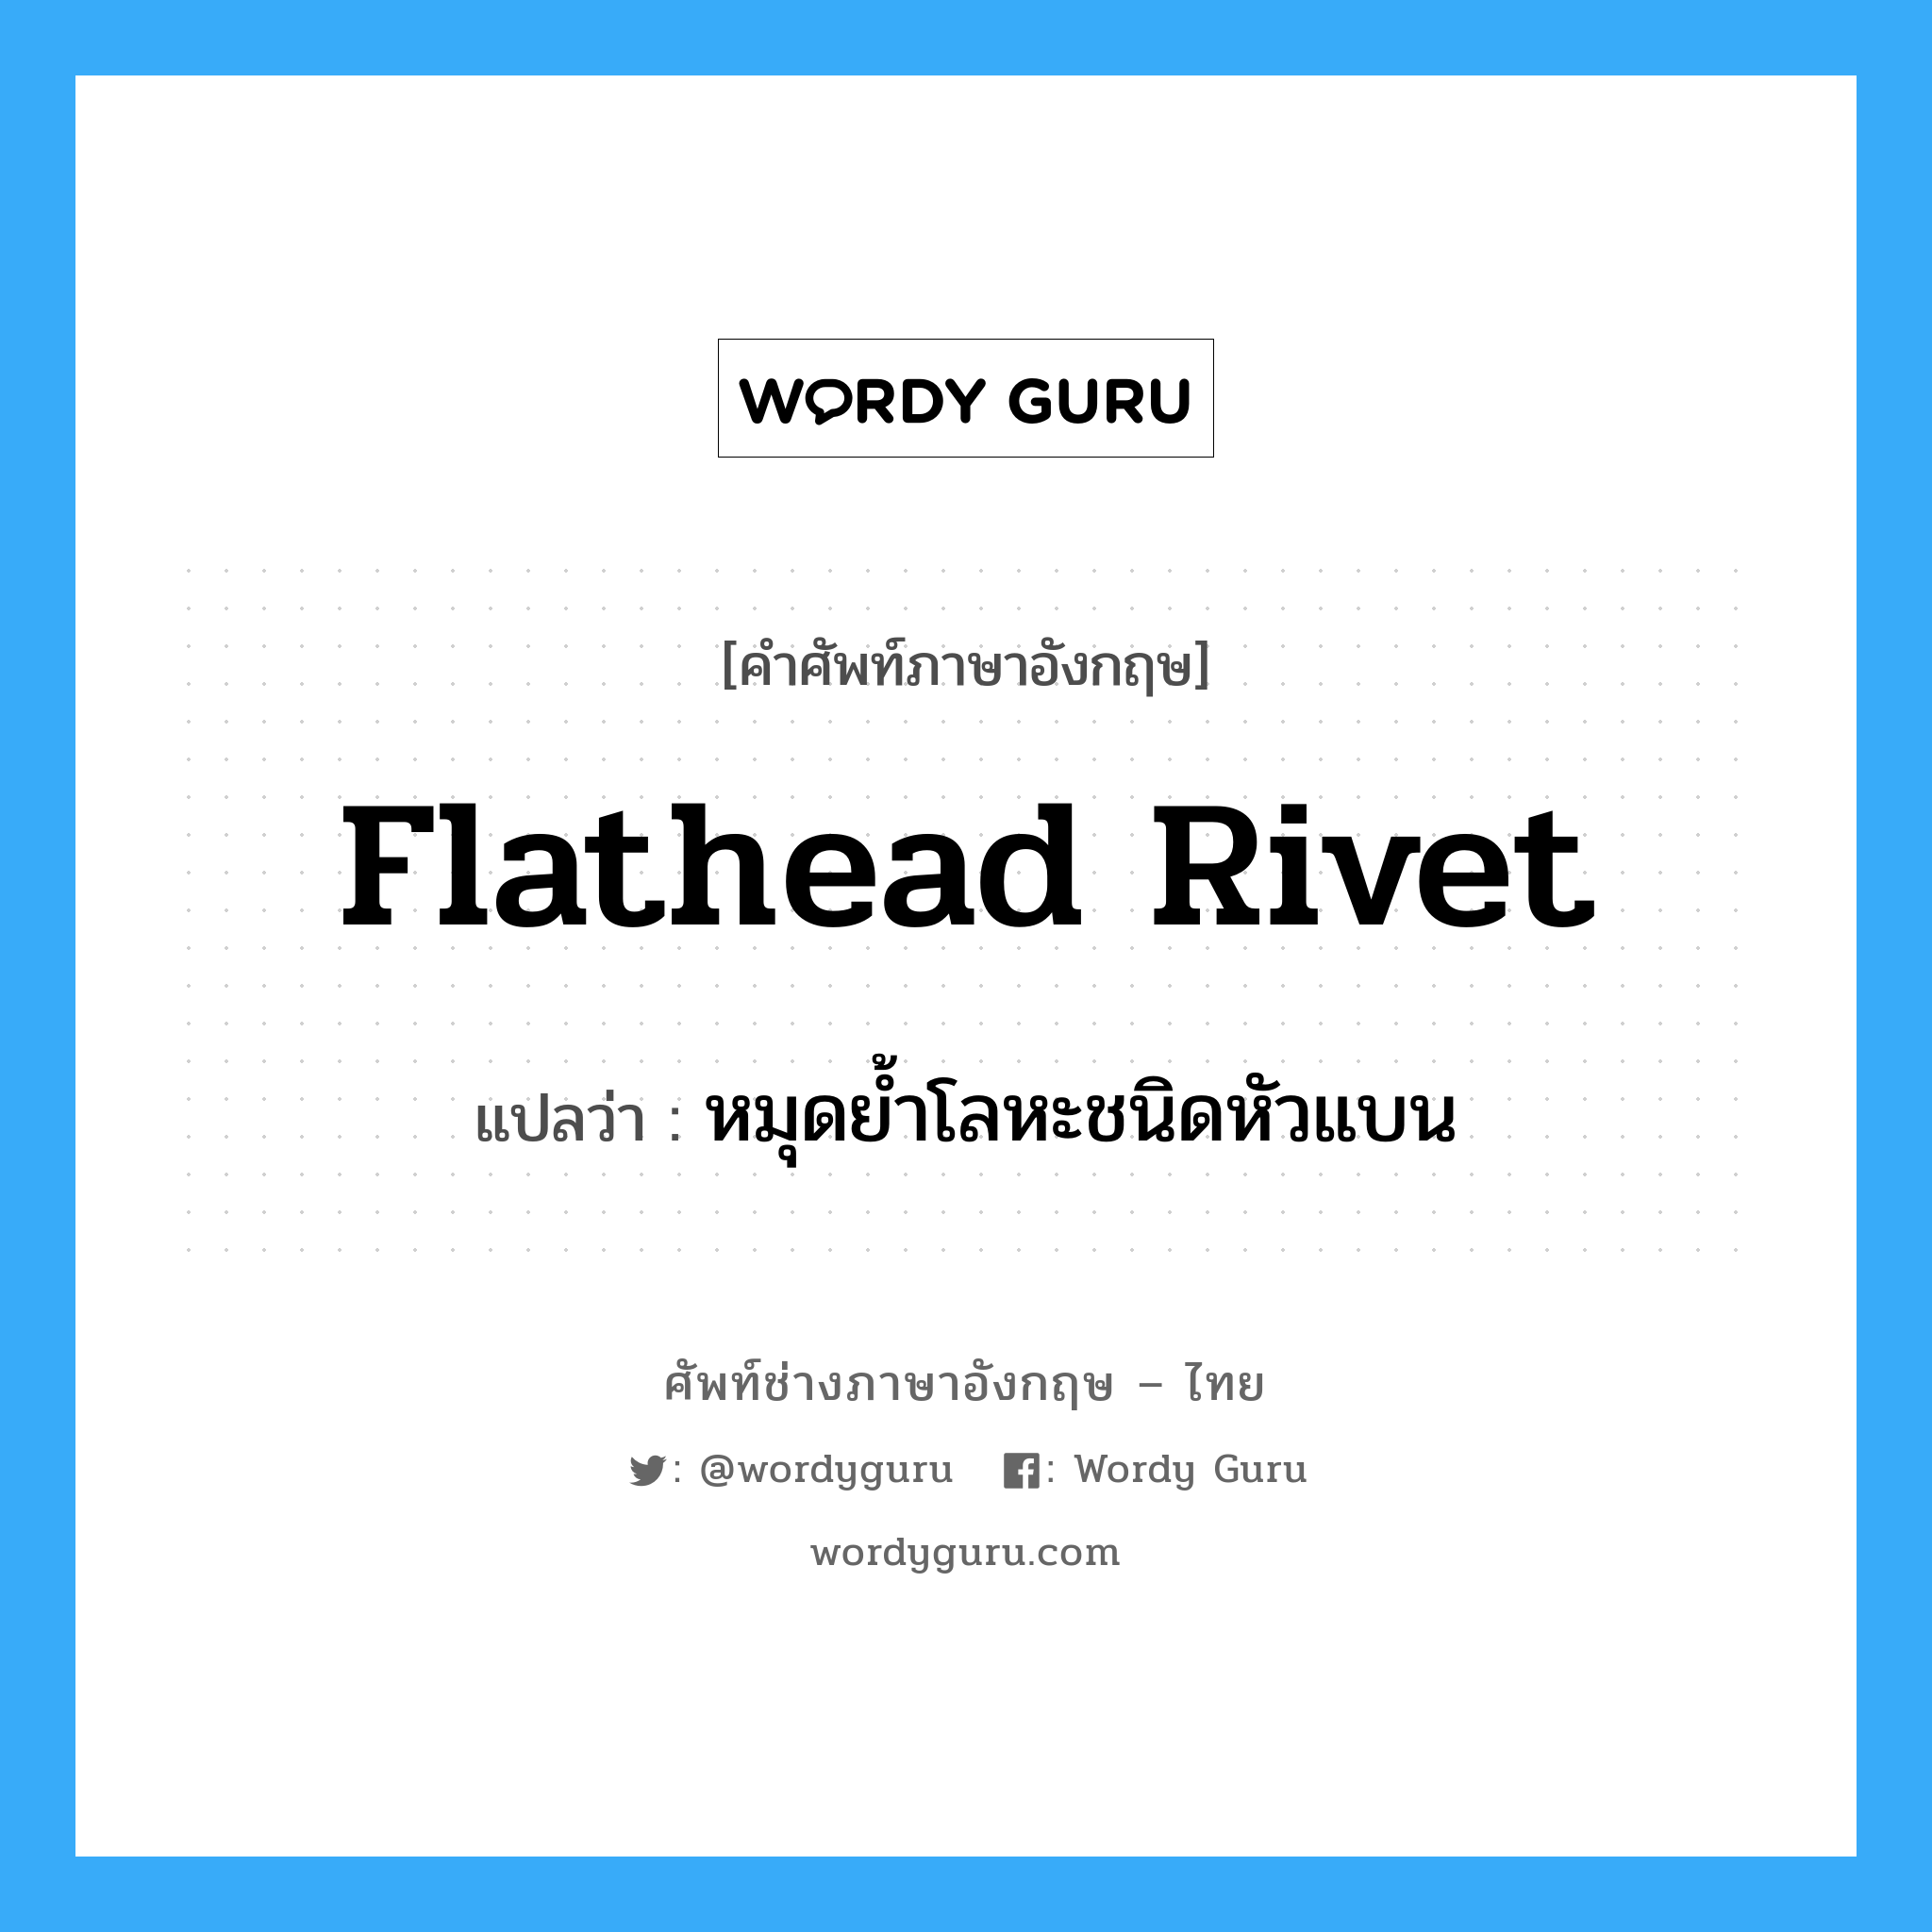 flathead rivet แปลว่า?, คำศัพท์ช่างภาษาอังกฤษ - ไทย flathead rivet คำศัพท์ภาษาอังกฤษ flathead rivet แปลว่า หมุดย้ำโลหะชนิดหัวแบน